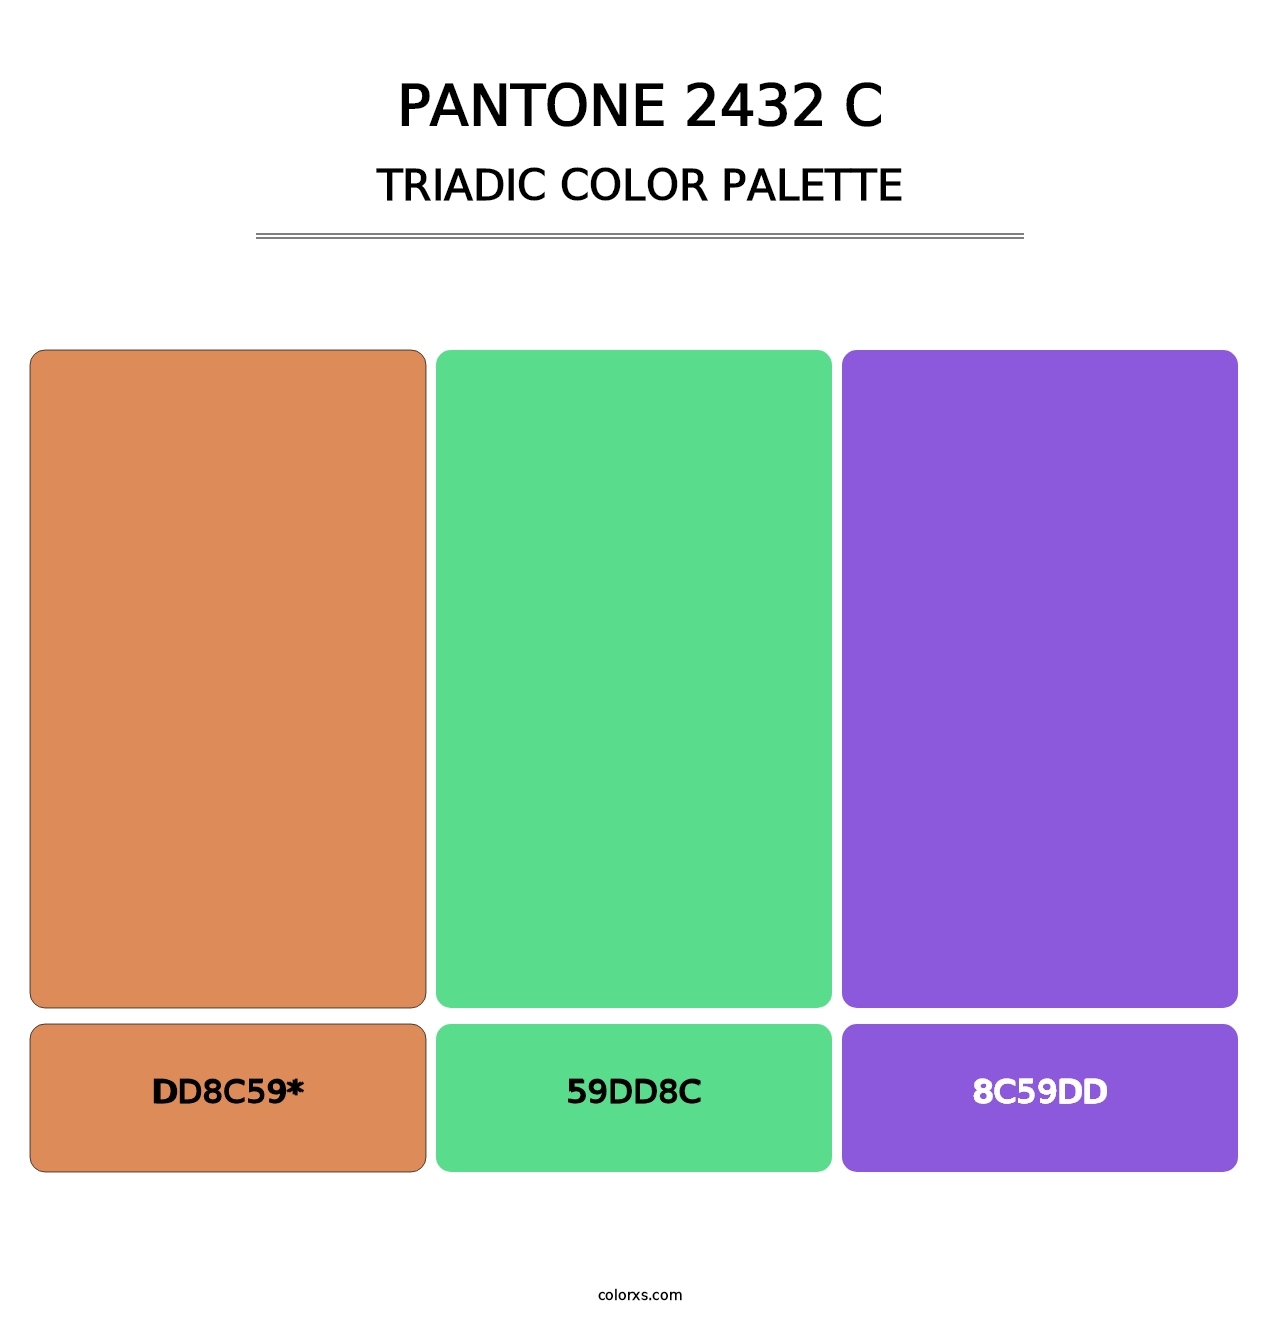 PANTONE 2432 C - Triadic Color Palette